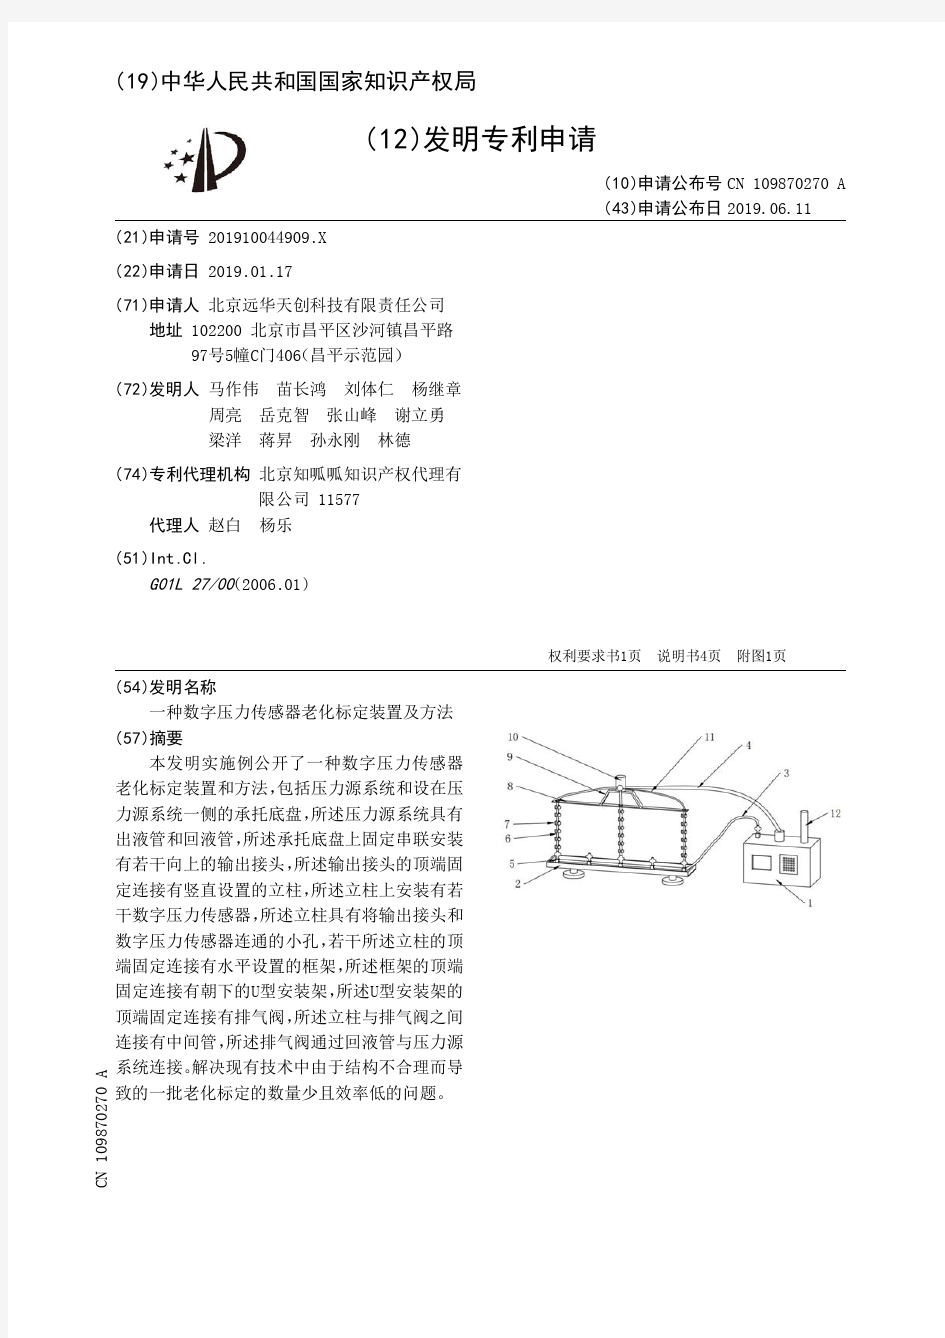 【CN109870270A】一种数字压力传感器老化标定装置及方法【专利】